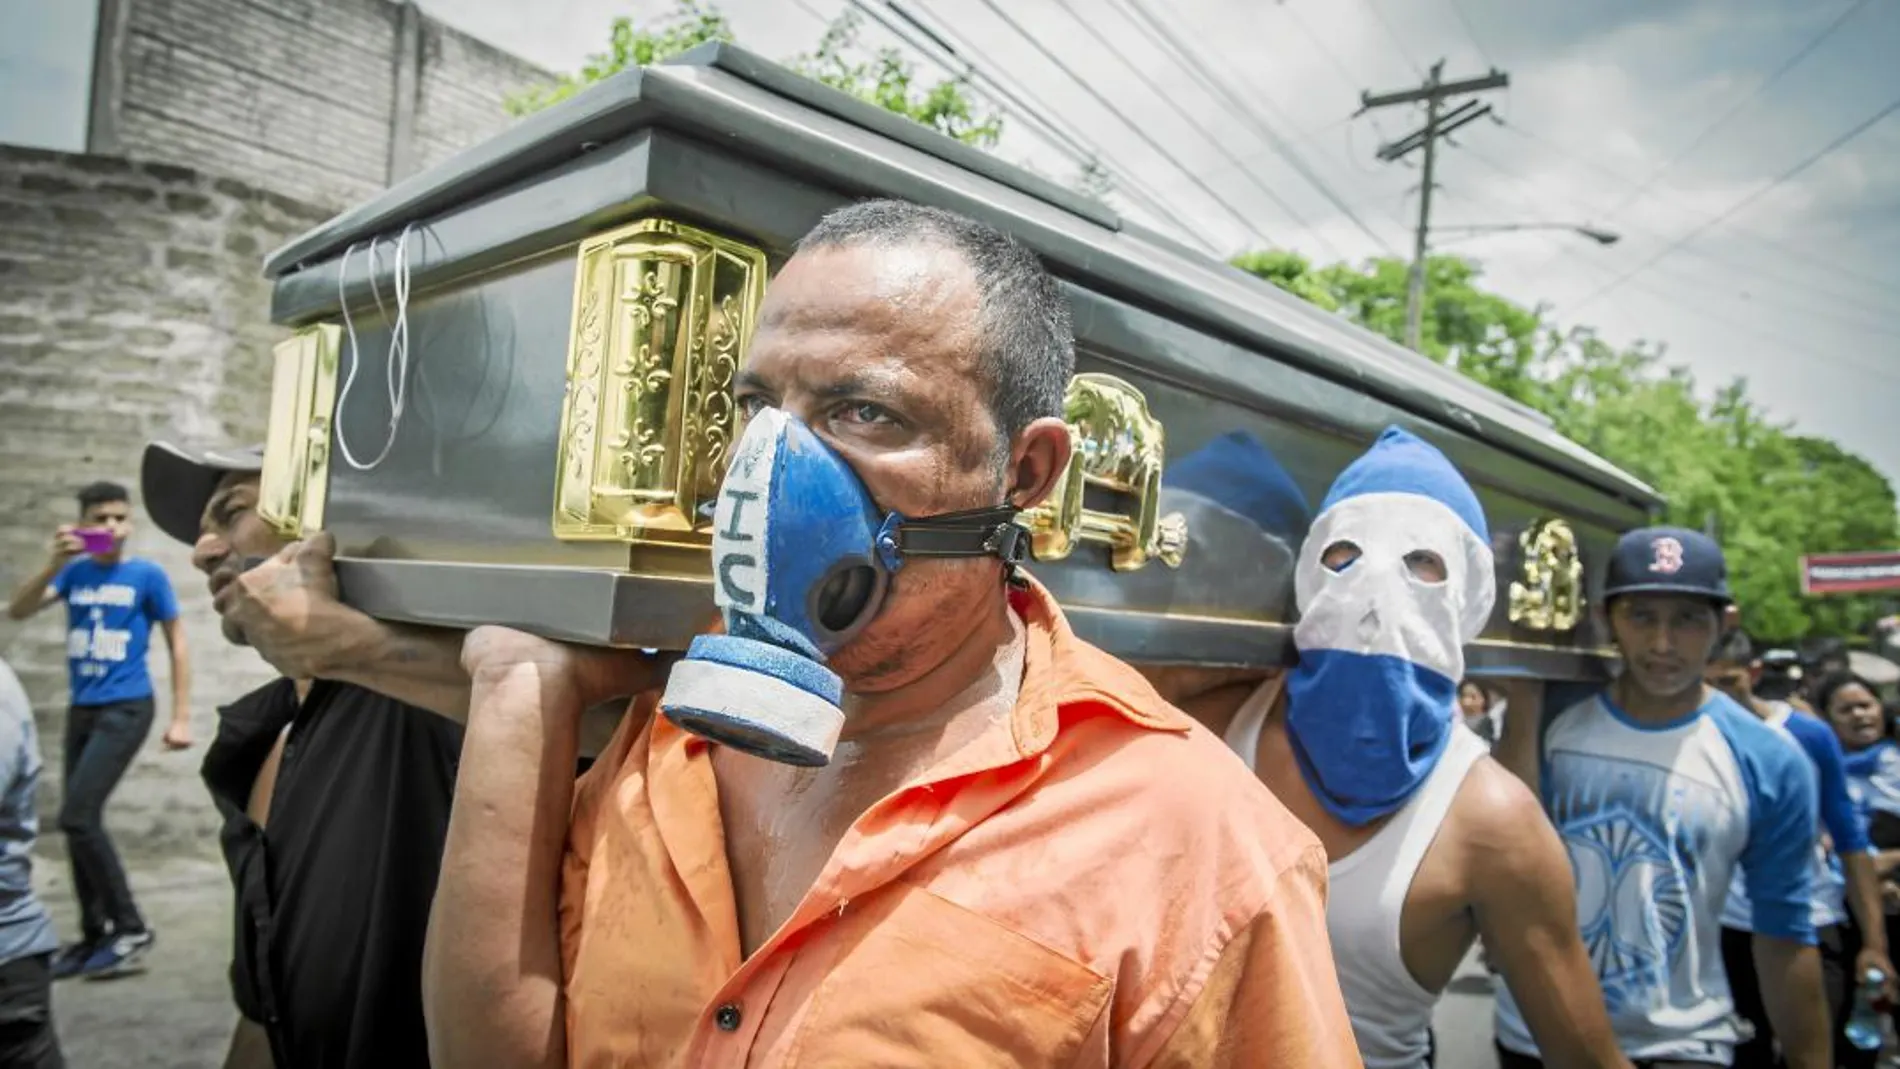 Amigos de una de los manifestantes muertos en Nicaragua trasladan su féretro durante el funeral